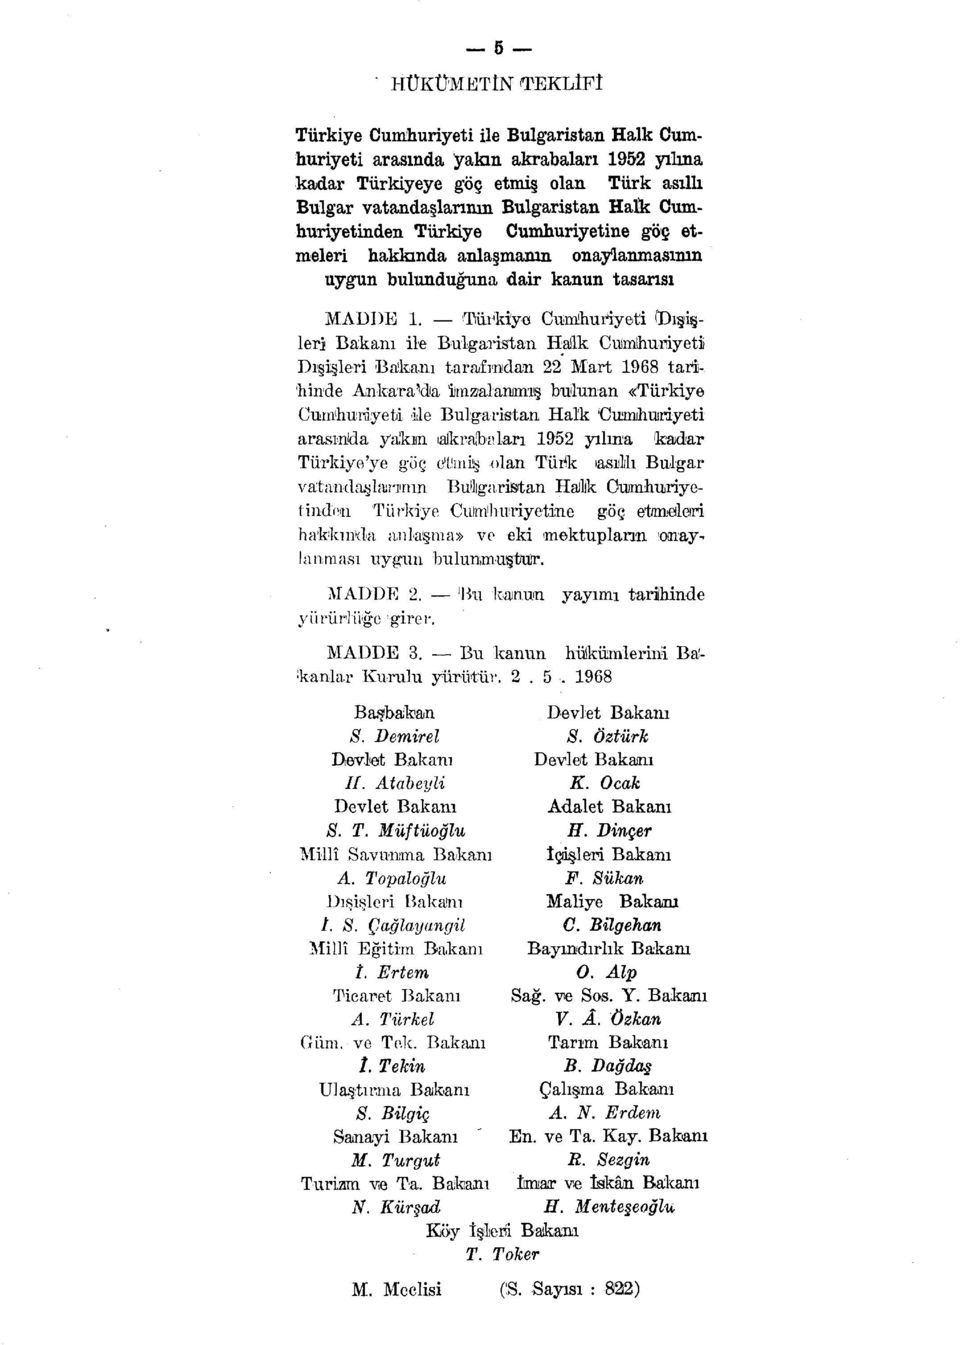 Türkiye Cumhuriyeti (Dışişleri Bakanı ile Bulgaristan Halik Cumhuriyeti Dışişleri Bakanı tarafından 22 Mart 1968 tari- 'hinde Ankara^da imzalanmış bulunan «Türkiye Cumhuriyeti ile Bulgaristan Hal'k